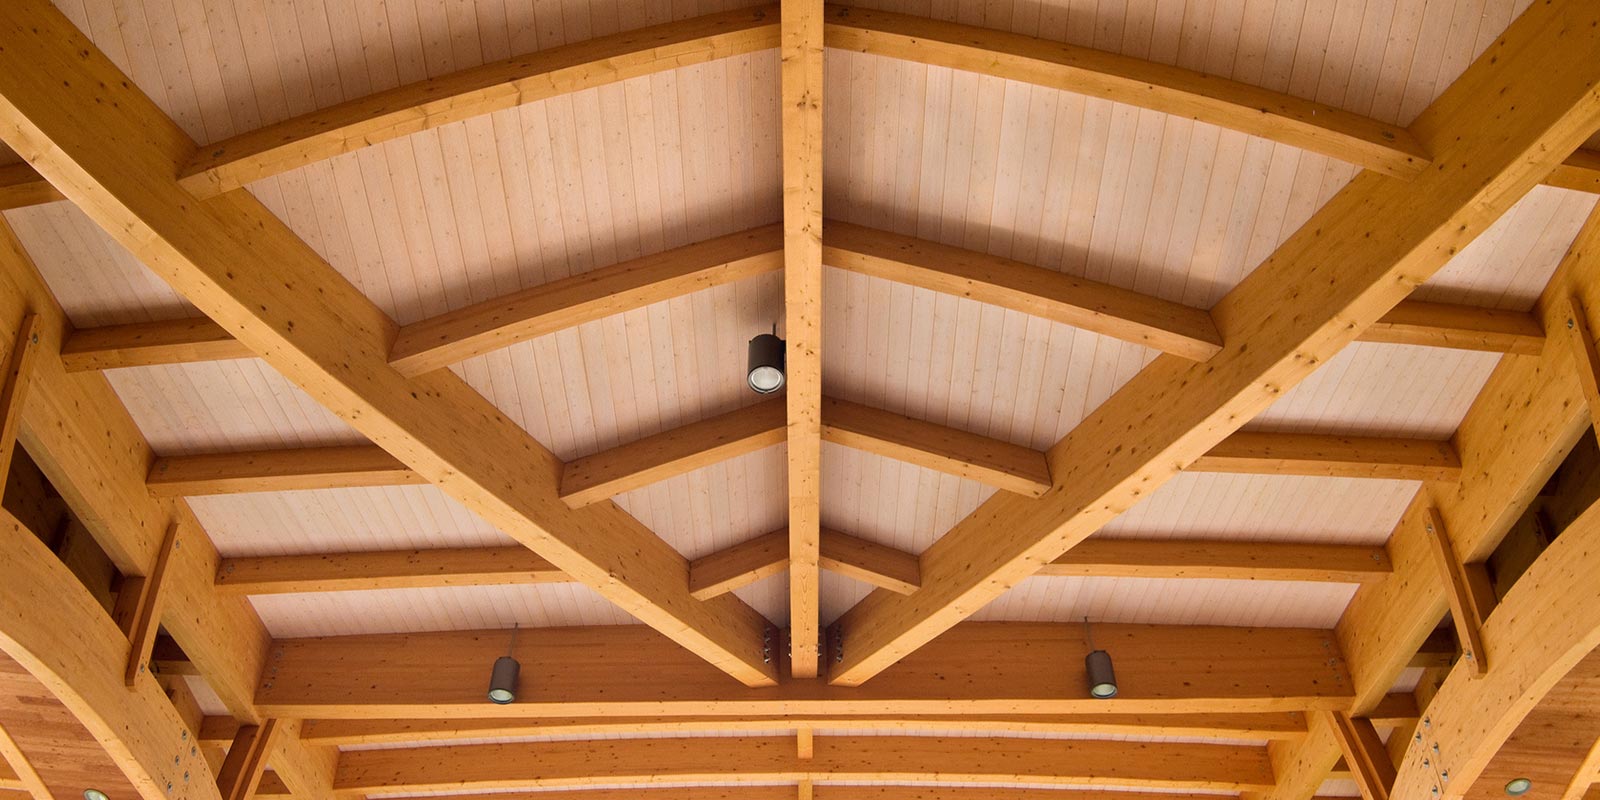 parte interna do telhado todo em madeira sua casa com mais personalidade